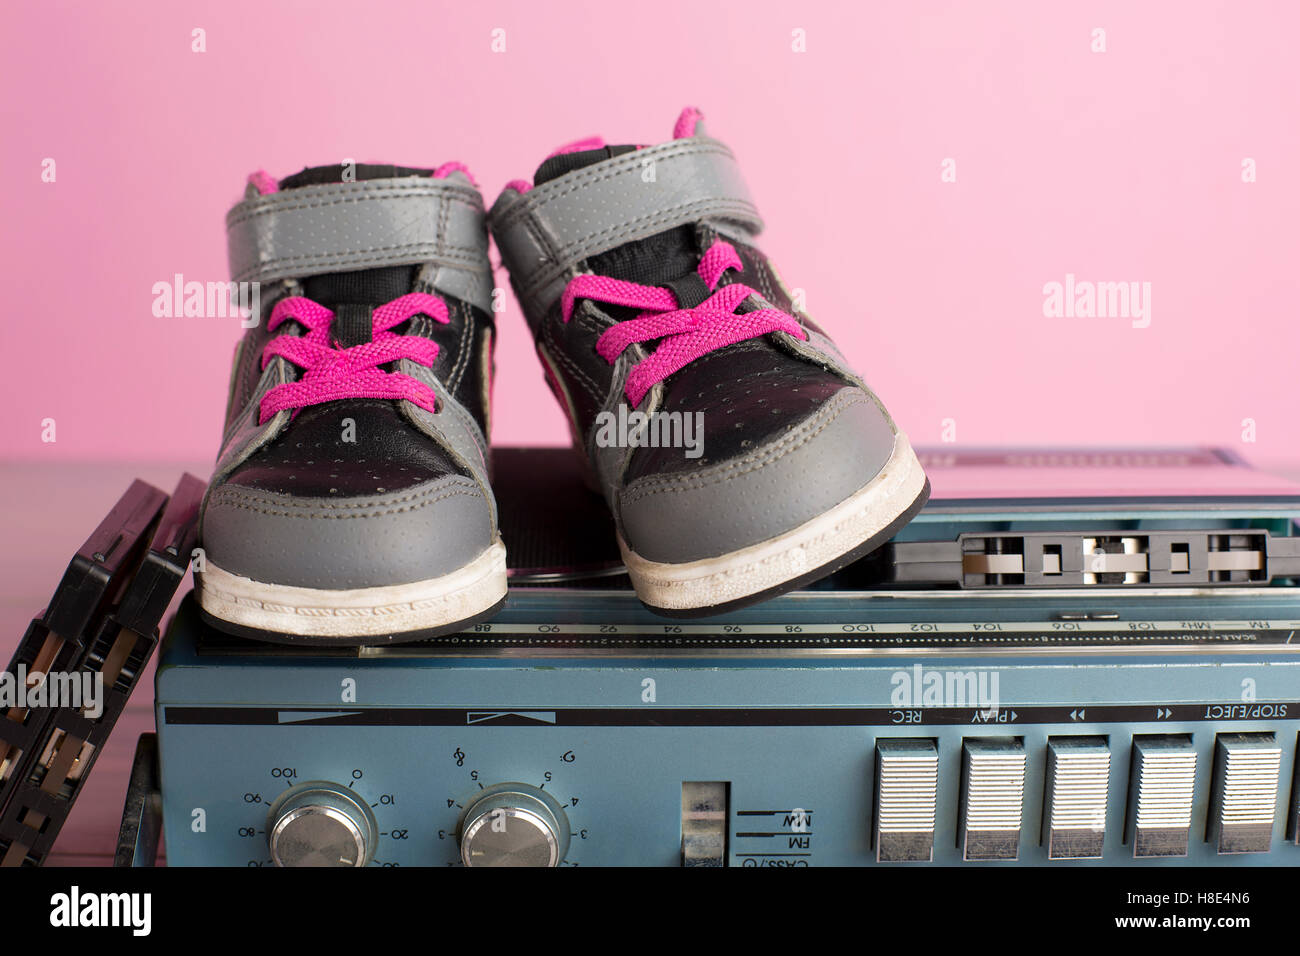 Porträt im 80er Jahre Stil ein kleines Kind Turnschuhe Schuhe  Stockfotografie - Alamy